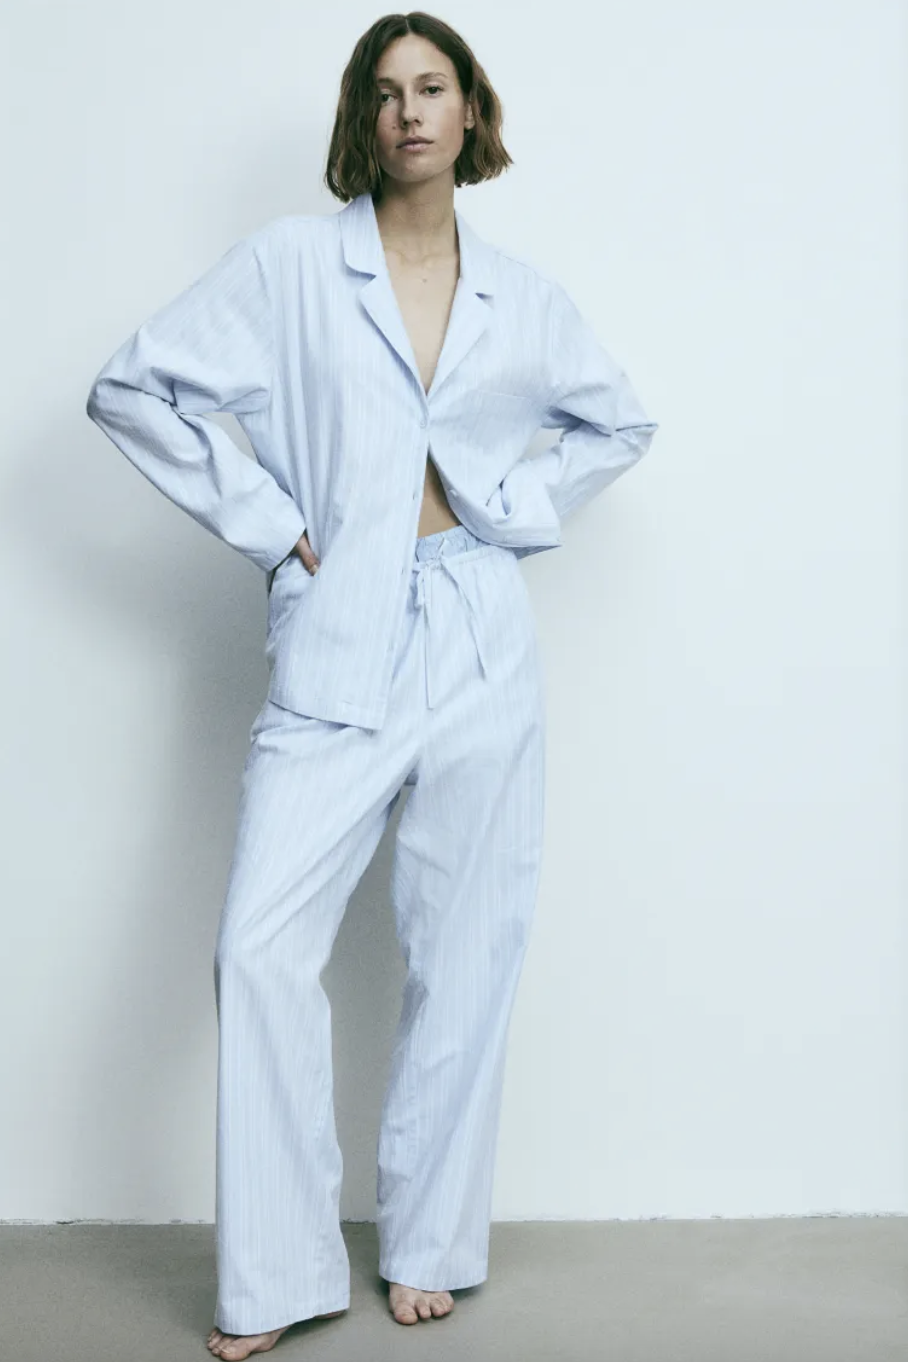 Pyjamas for Women: Buy Cotton Pyjamas for Women Online at Best